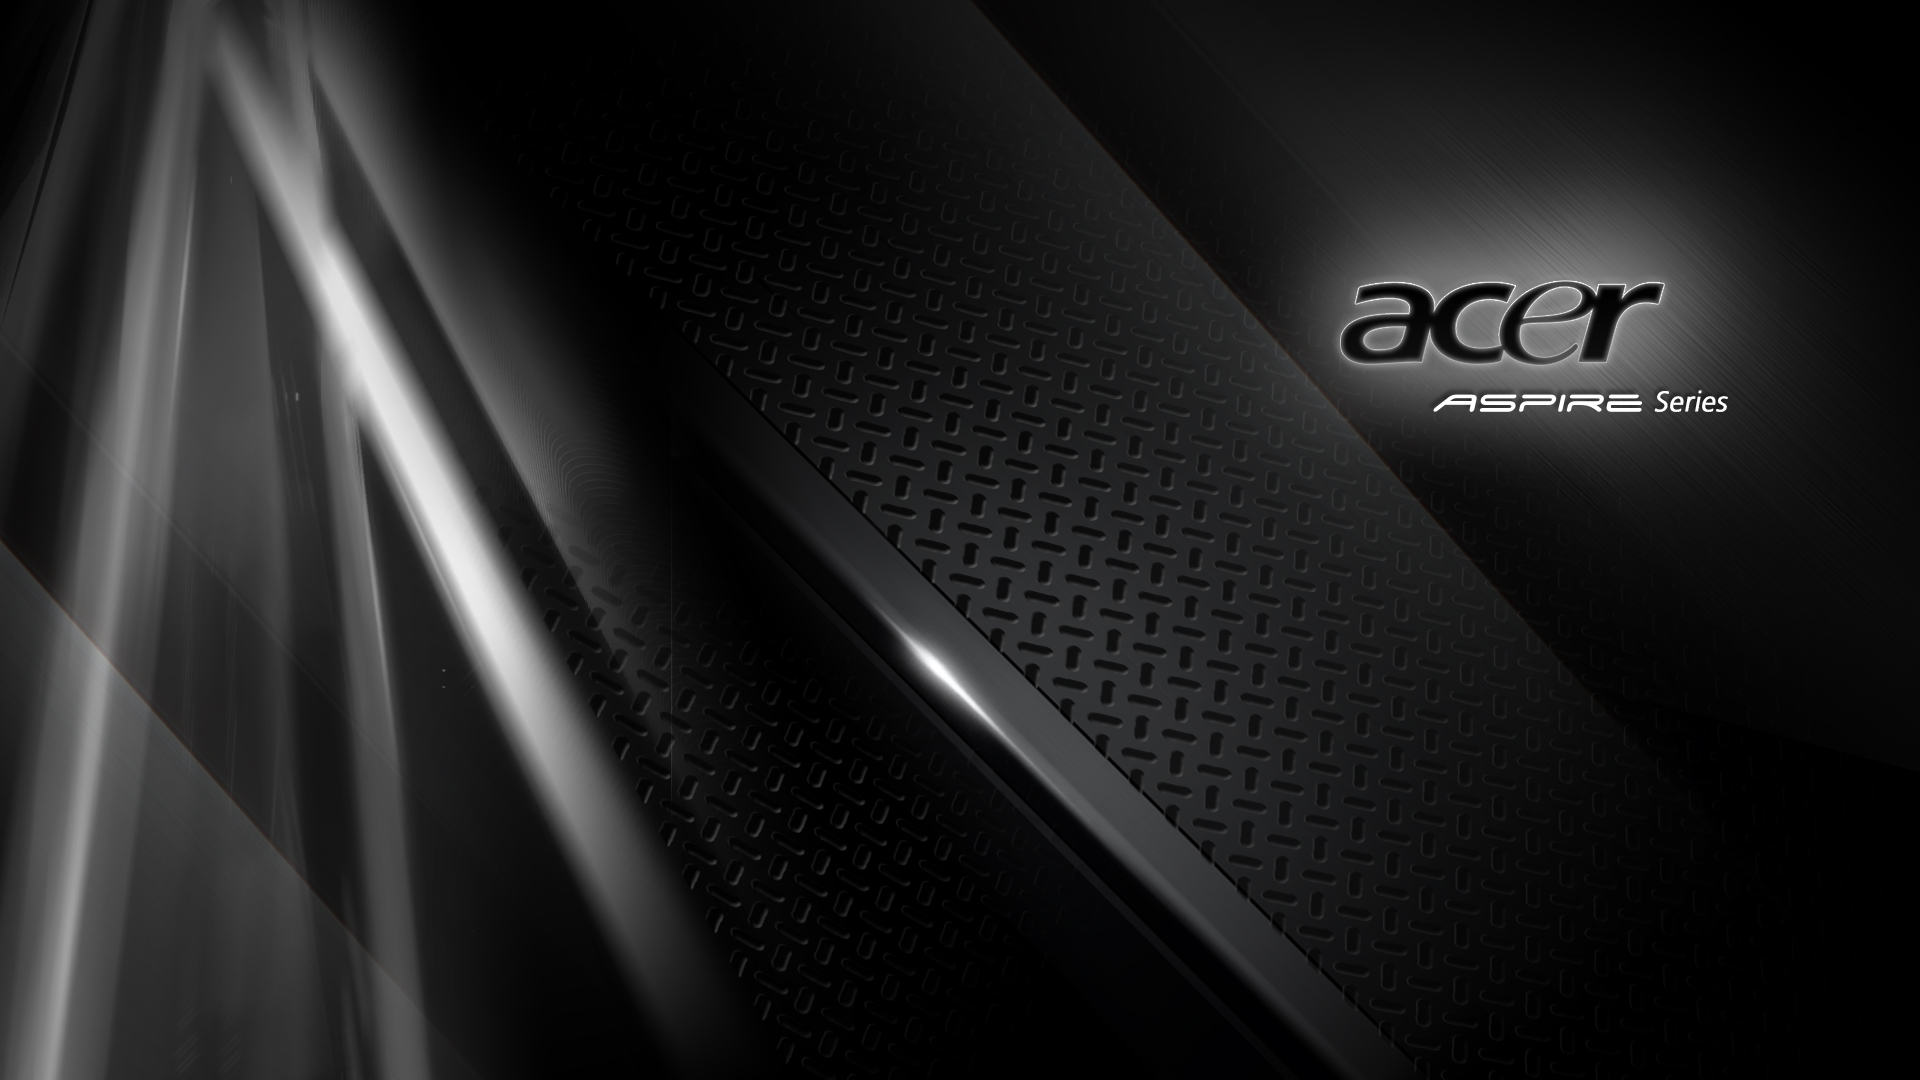 Free Download Acer Desktop Background 04 (49877) Full Size ...